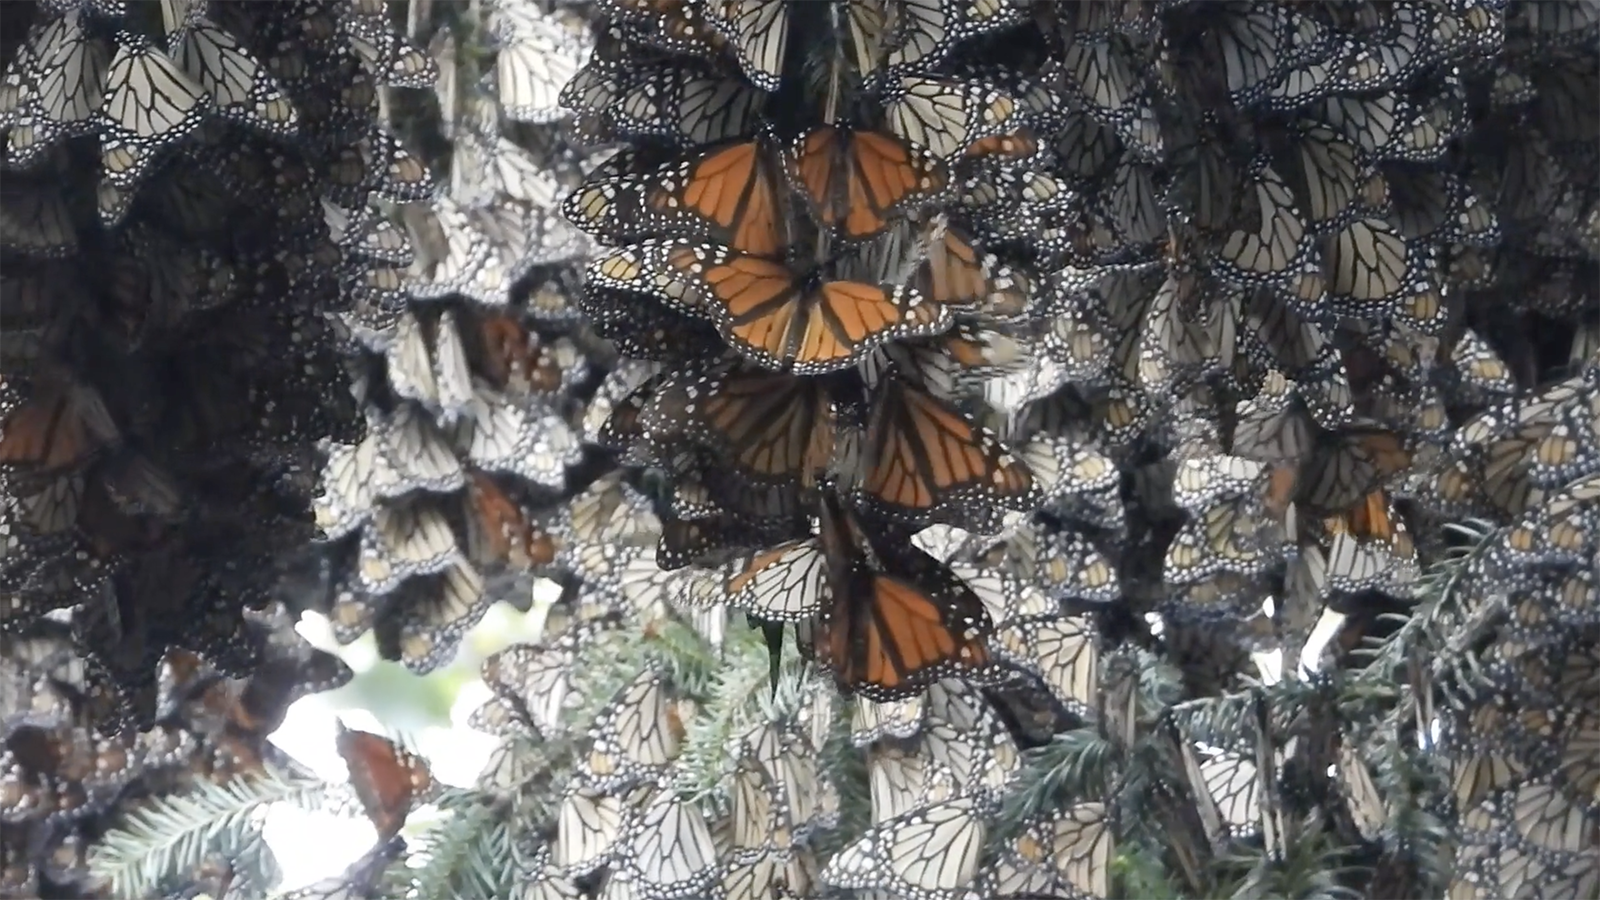 overwintering monarchs 